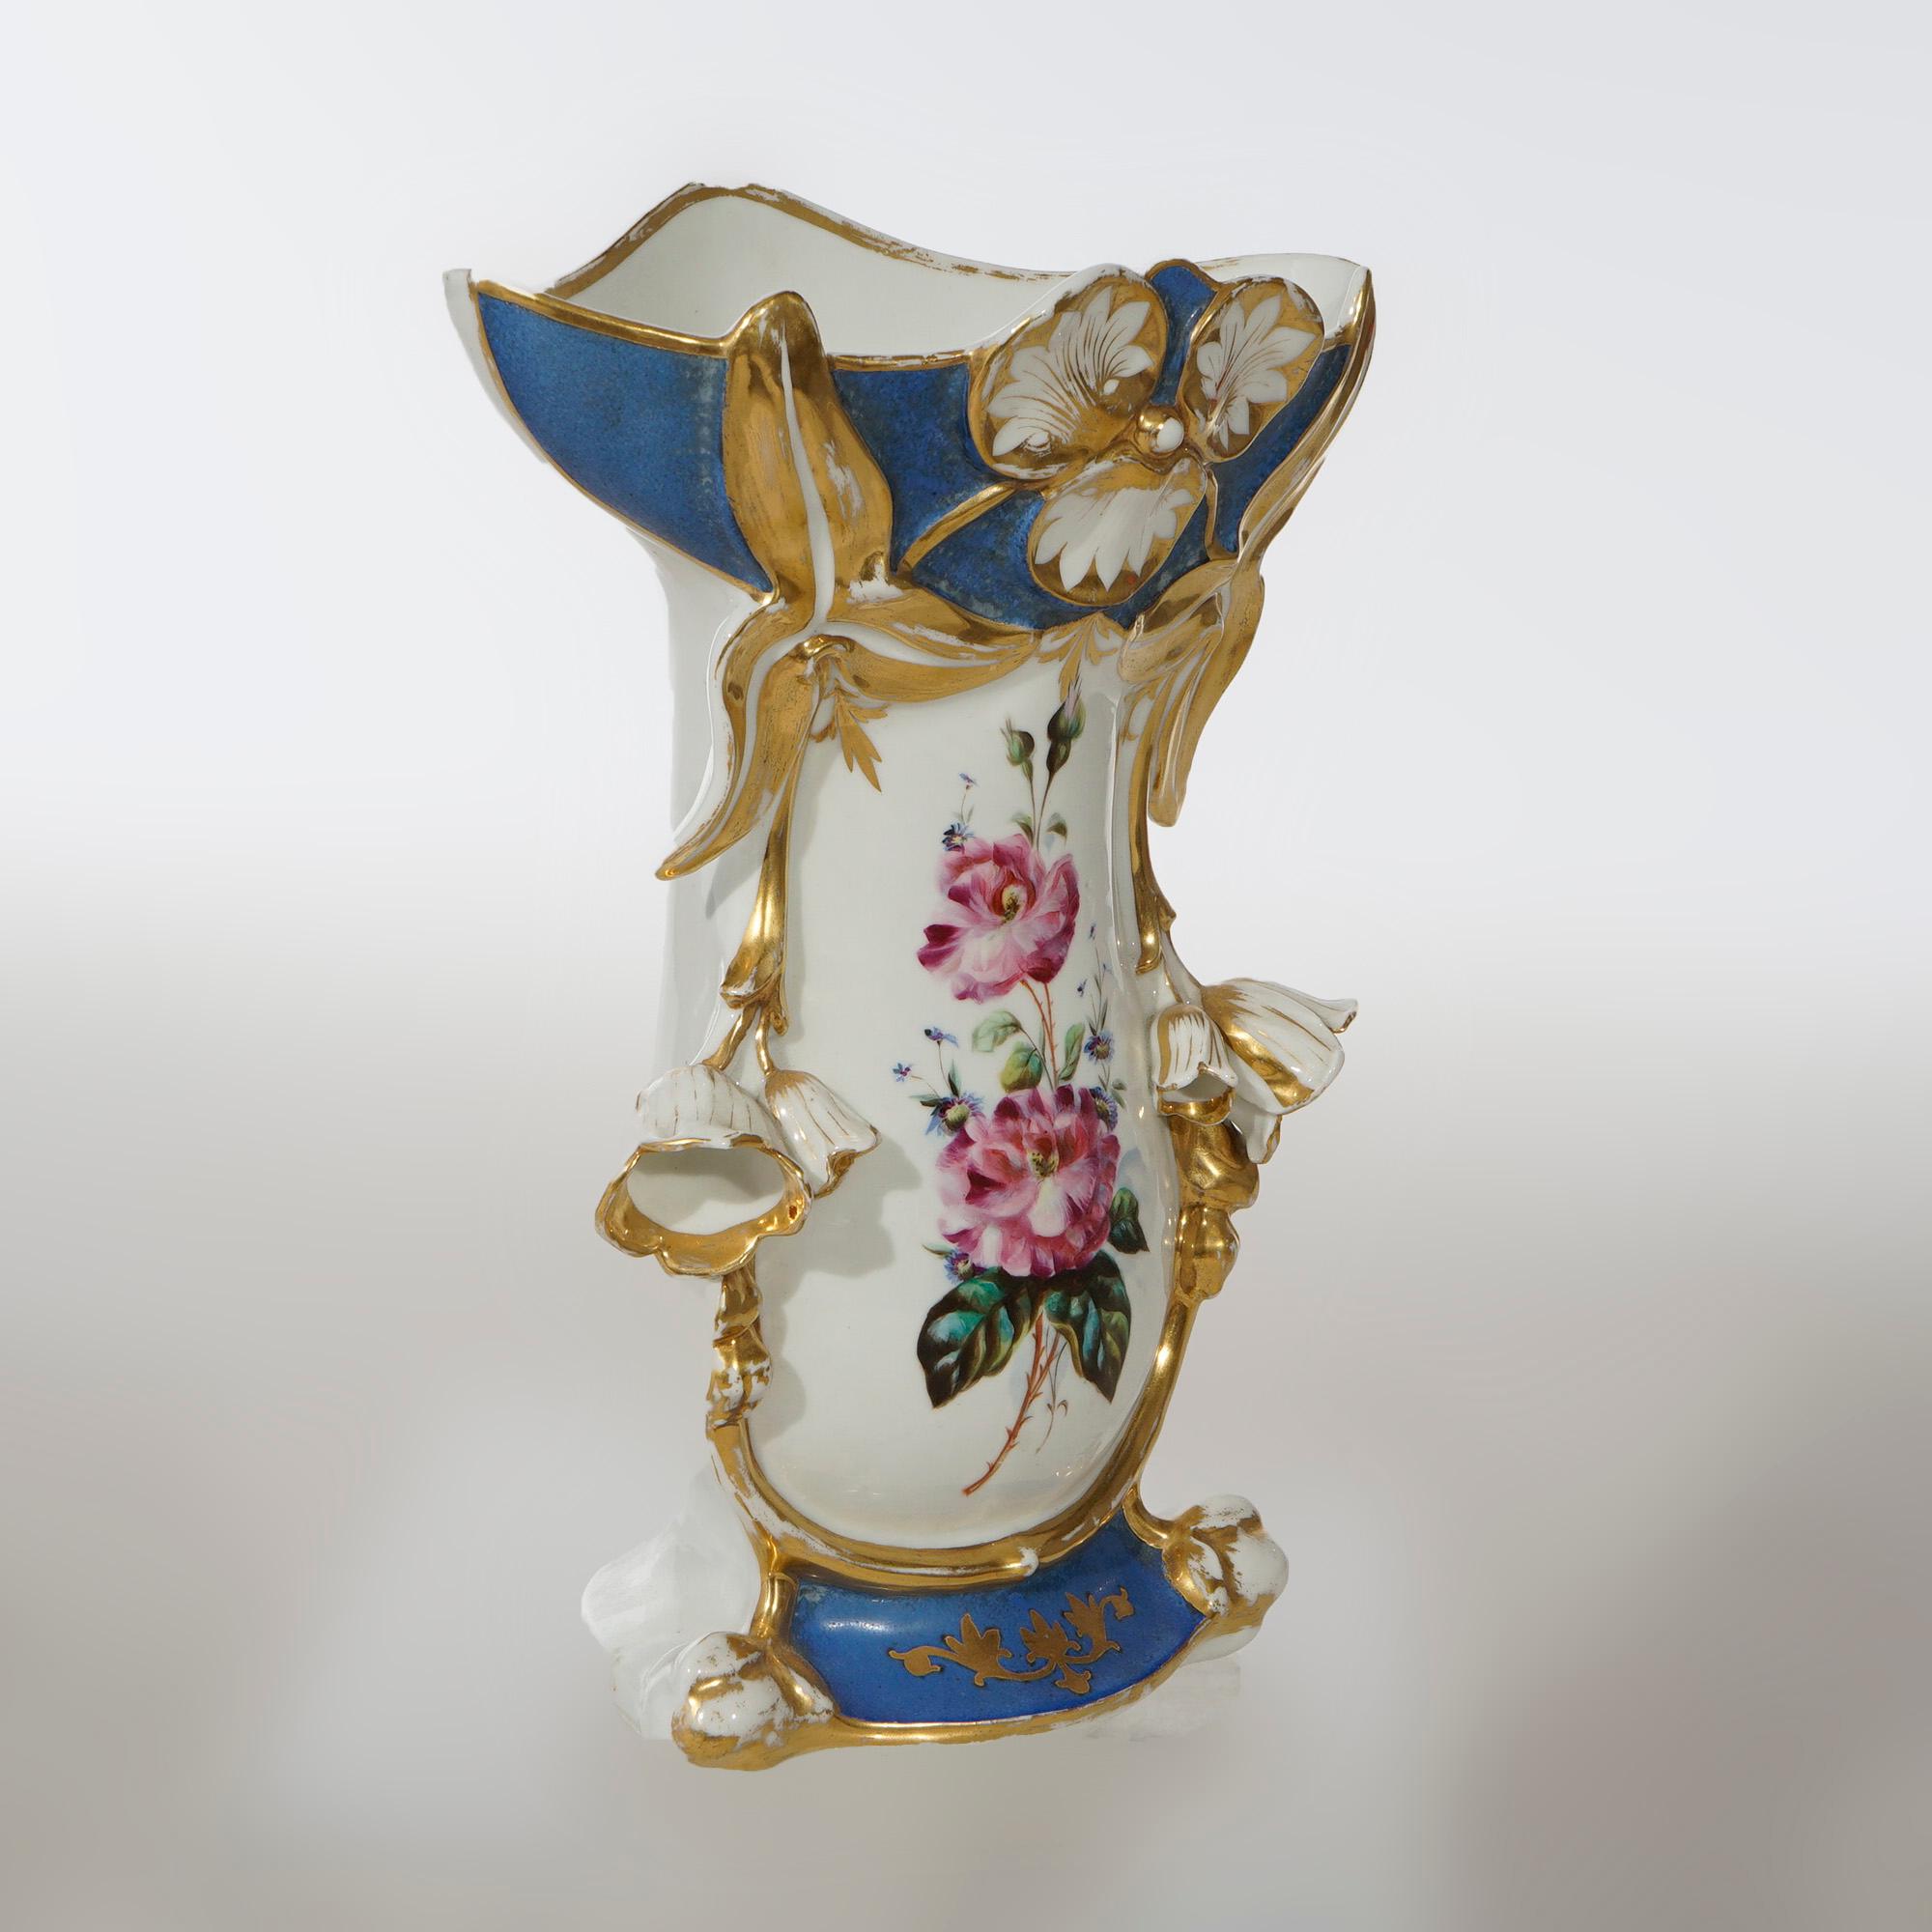 Vase ancien en porcelaine de Paris avec réserve florale bleue peinte à la main sur fond bleu et rehauts de dorure, 19e siècle.

Dimensions : 13'' H x 9.75'' L x 5.25'' D.